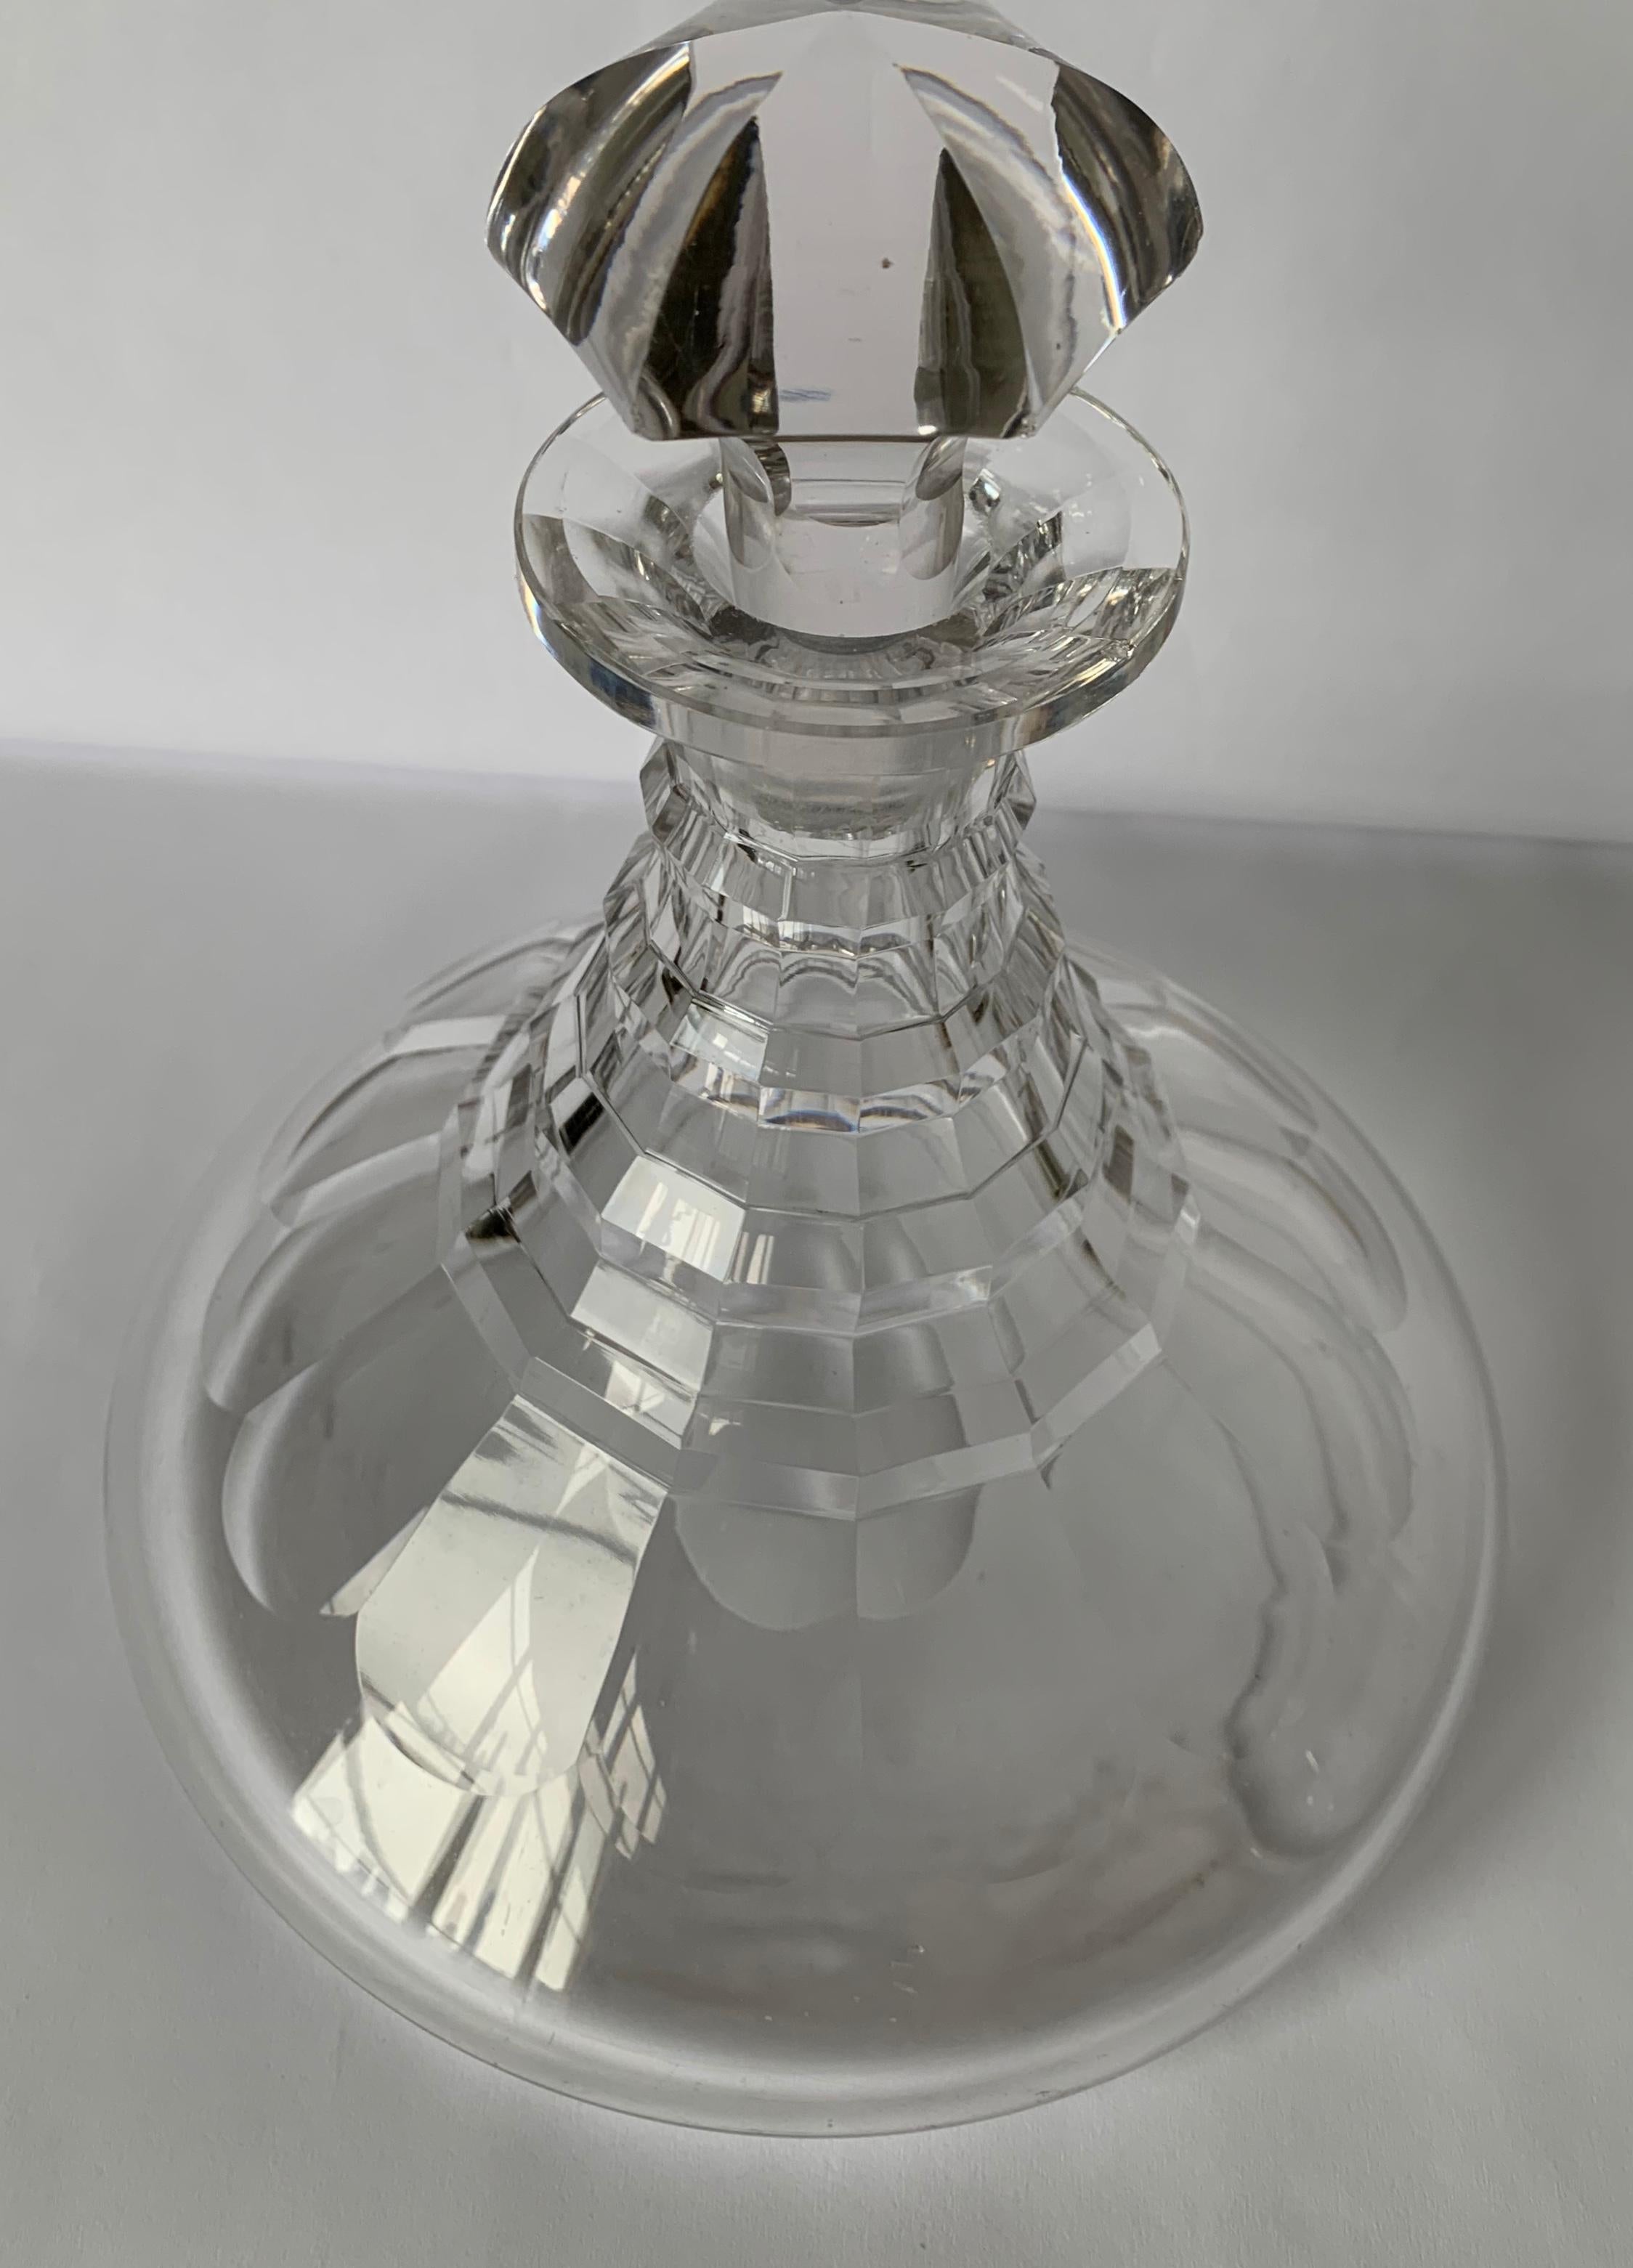 Carafe de bateau en verre taillé de style George III (1810). Motif de verre taillé à facettes sur toute la surface. Pas de marque de fabricant ni de signature.
Acheté chez Taylor B. Williams antiques, 1999.